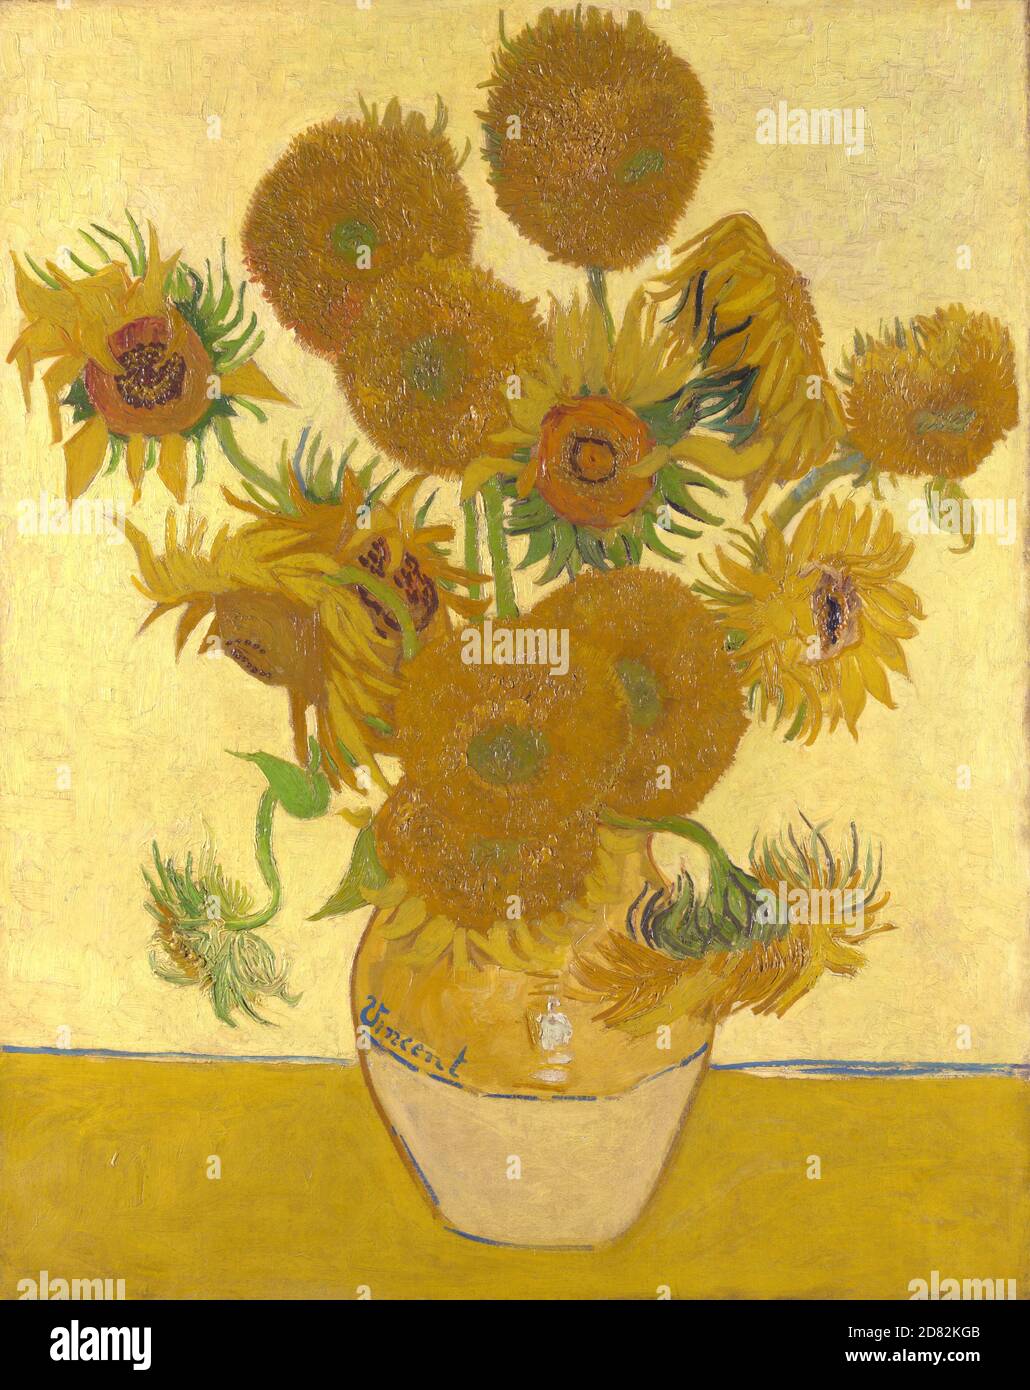 Titolo: Girasoli Creatore: Vincent van Gogh Data: 1888 Medium: Olio su tela dimensioni: 92.1x73 cms Ubicazione: National Gallery, Londra Foto Stock